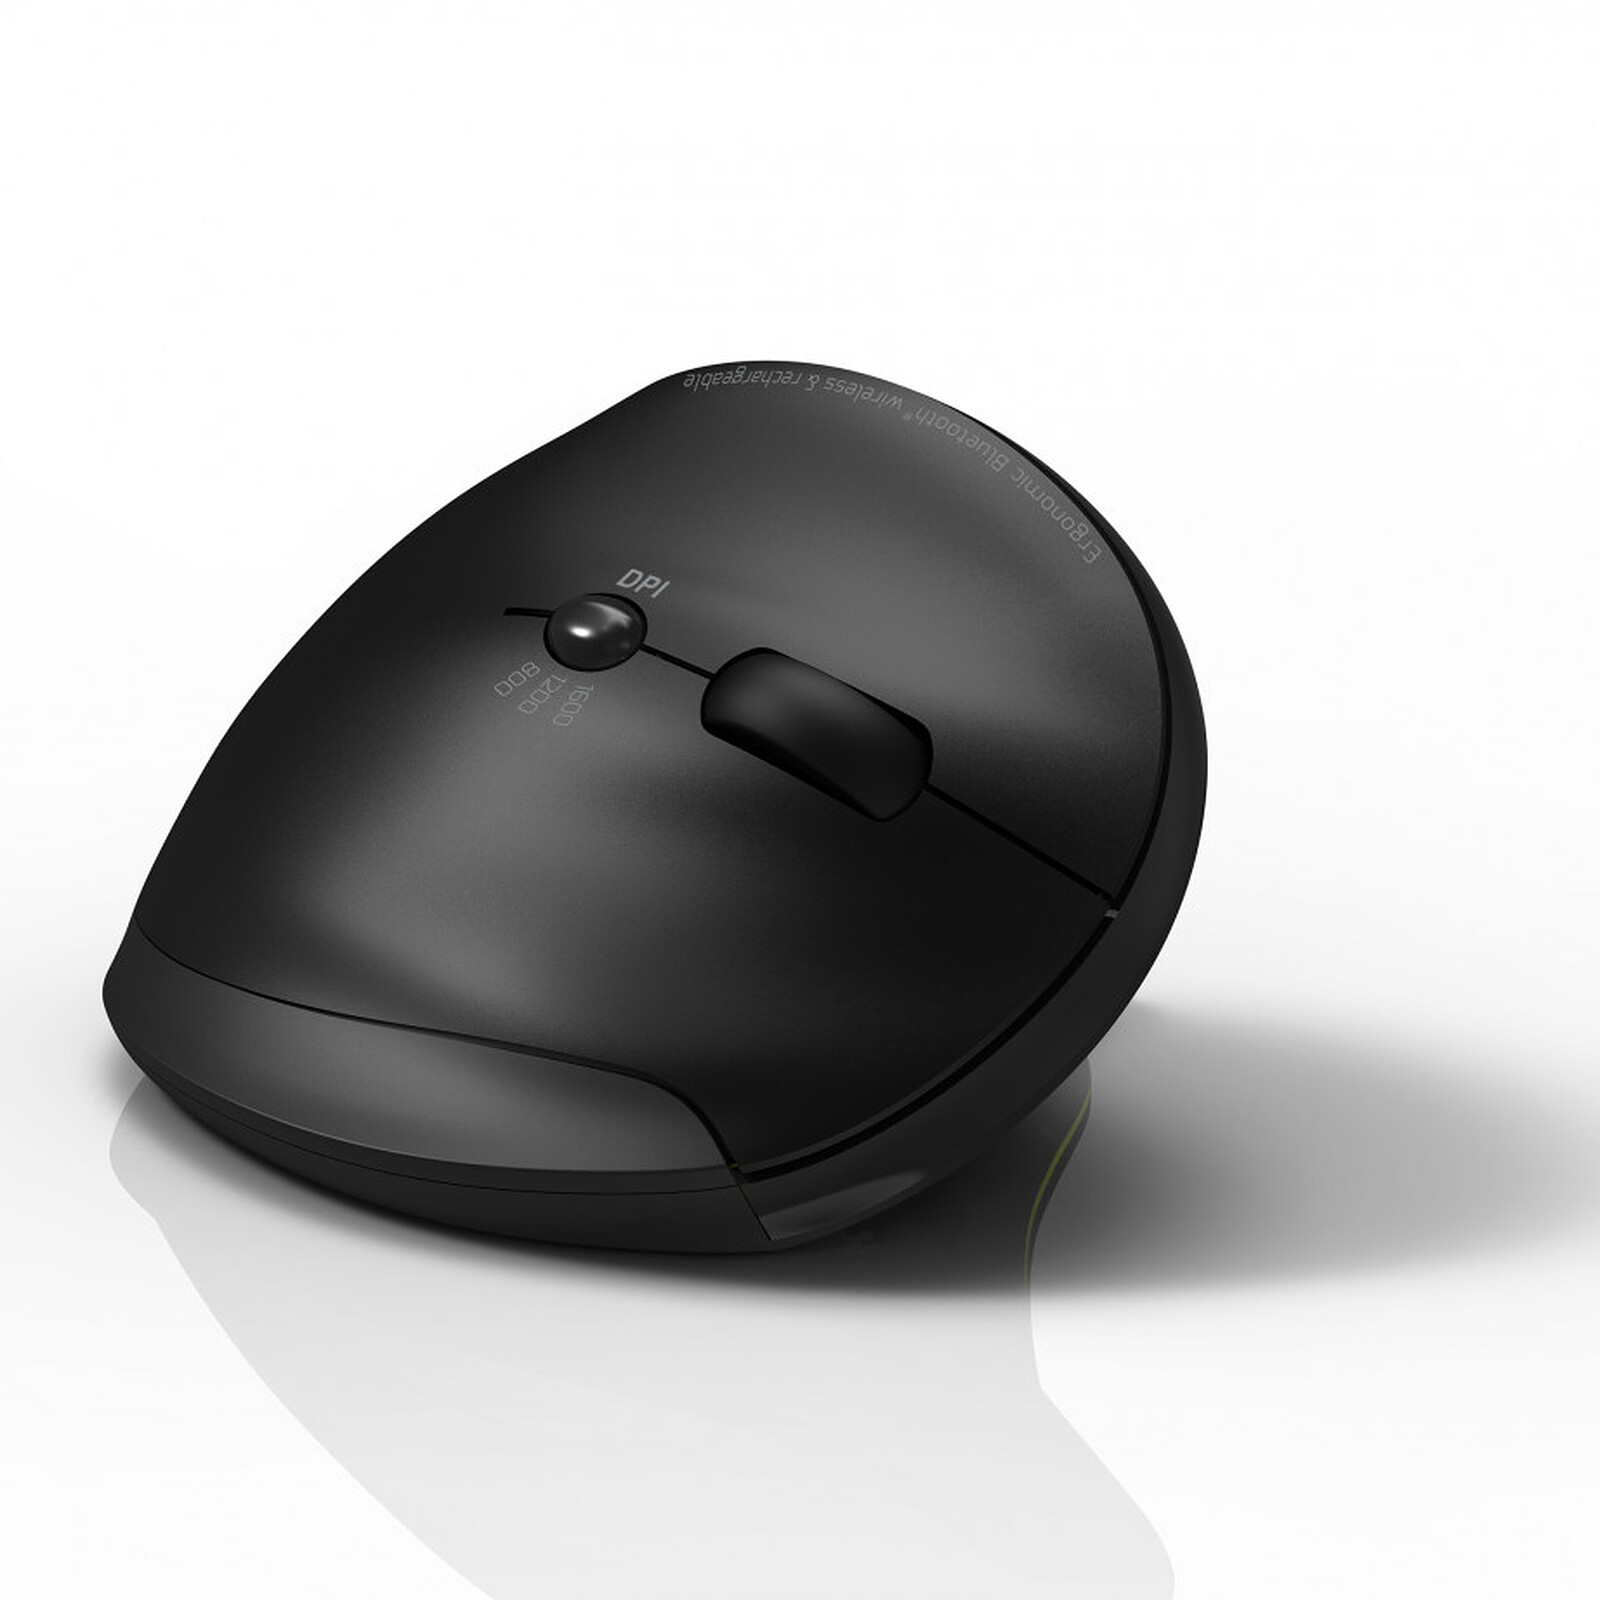 Souris ergonomique Logitech Souris de souris sans fil Bluetooth